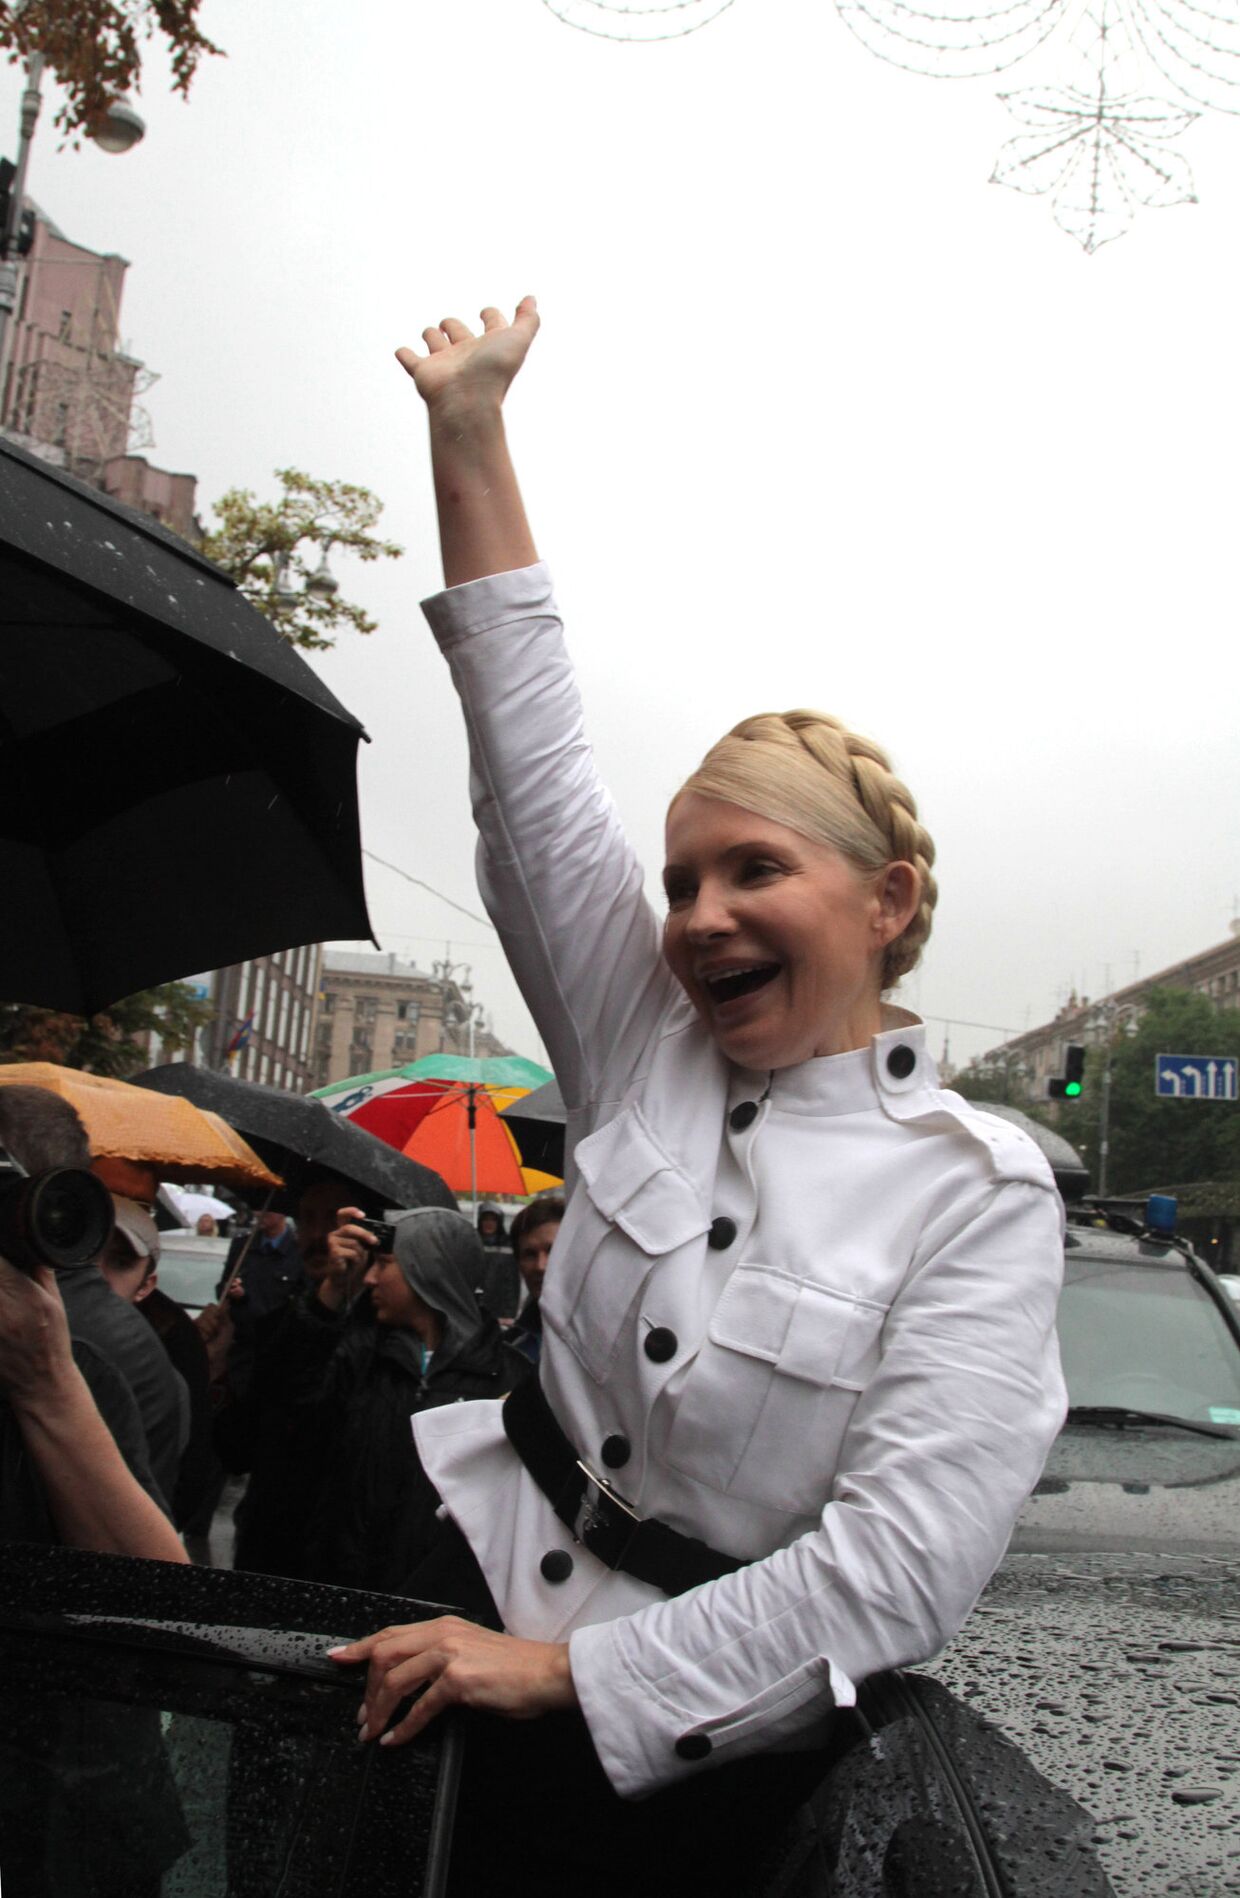 Судебное заседание по делу Юлии Тимошенко